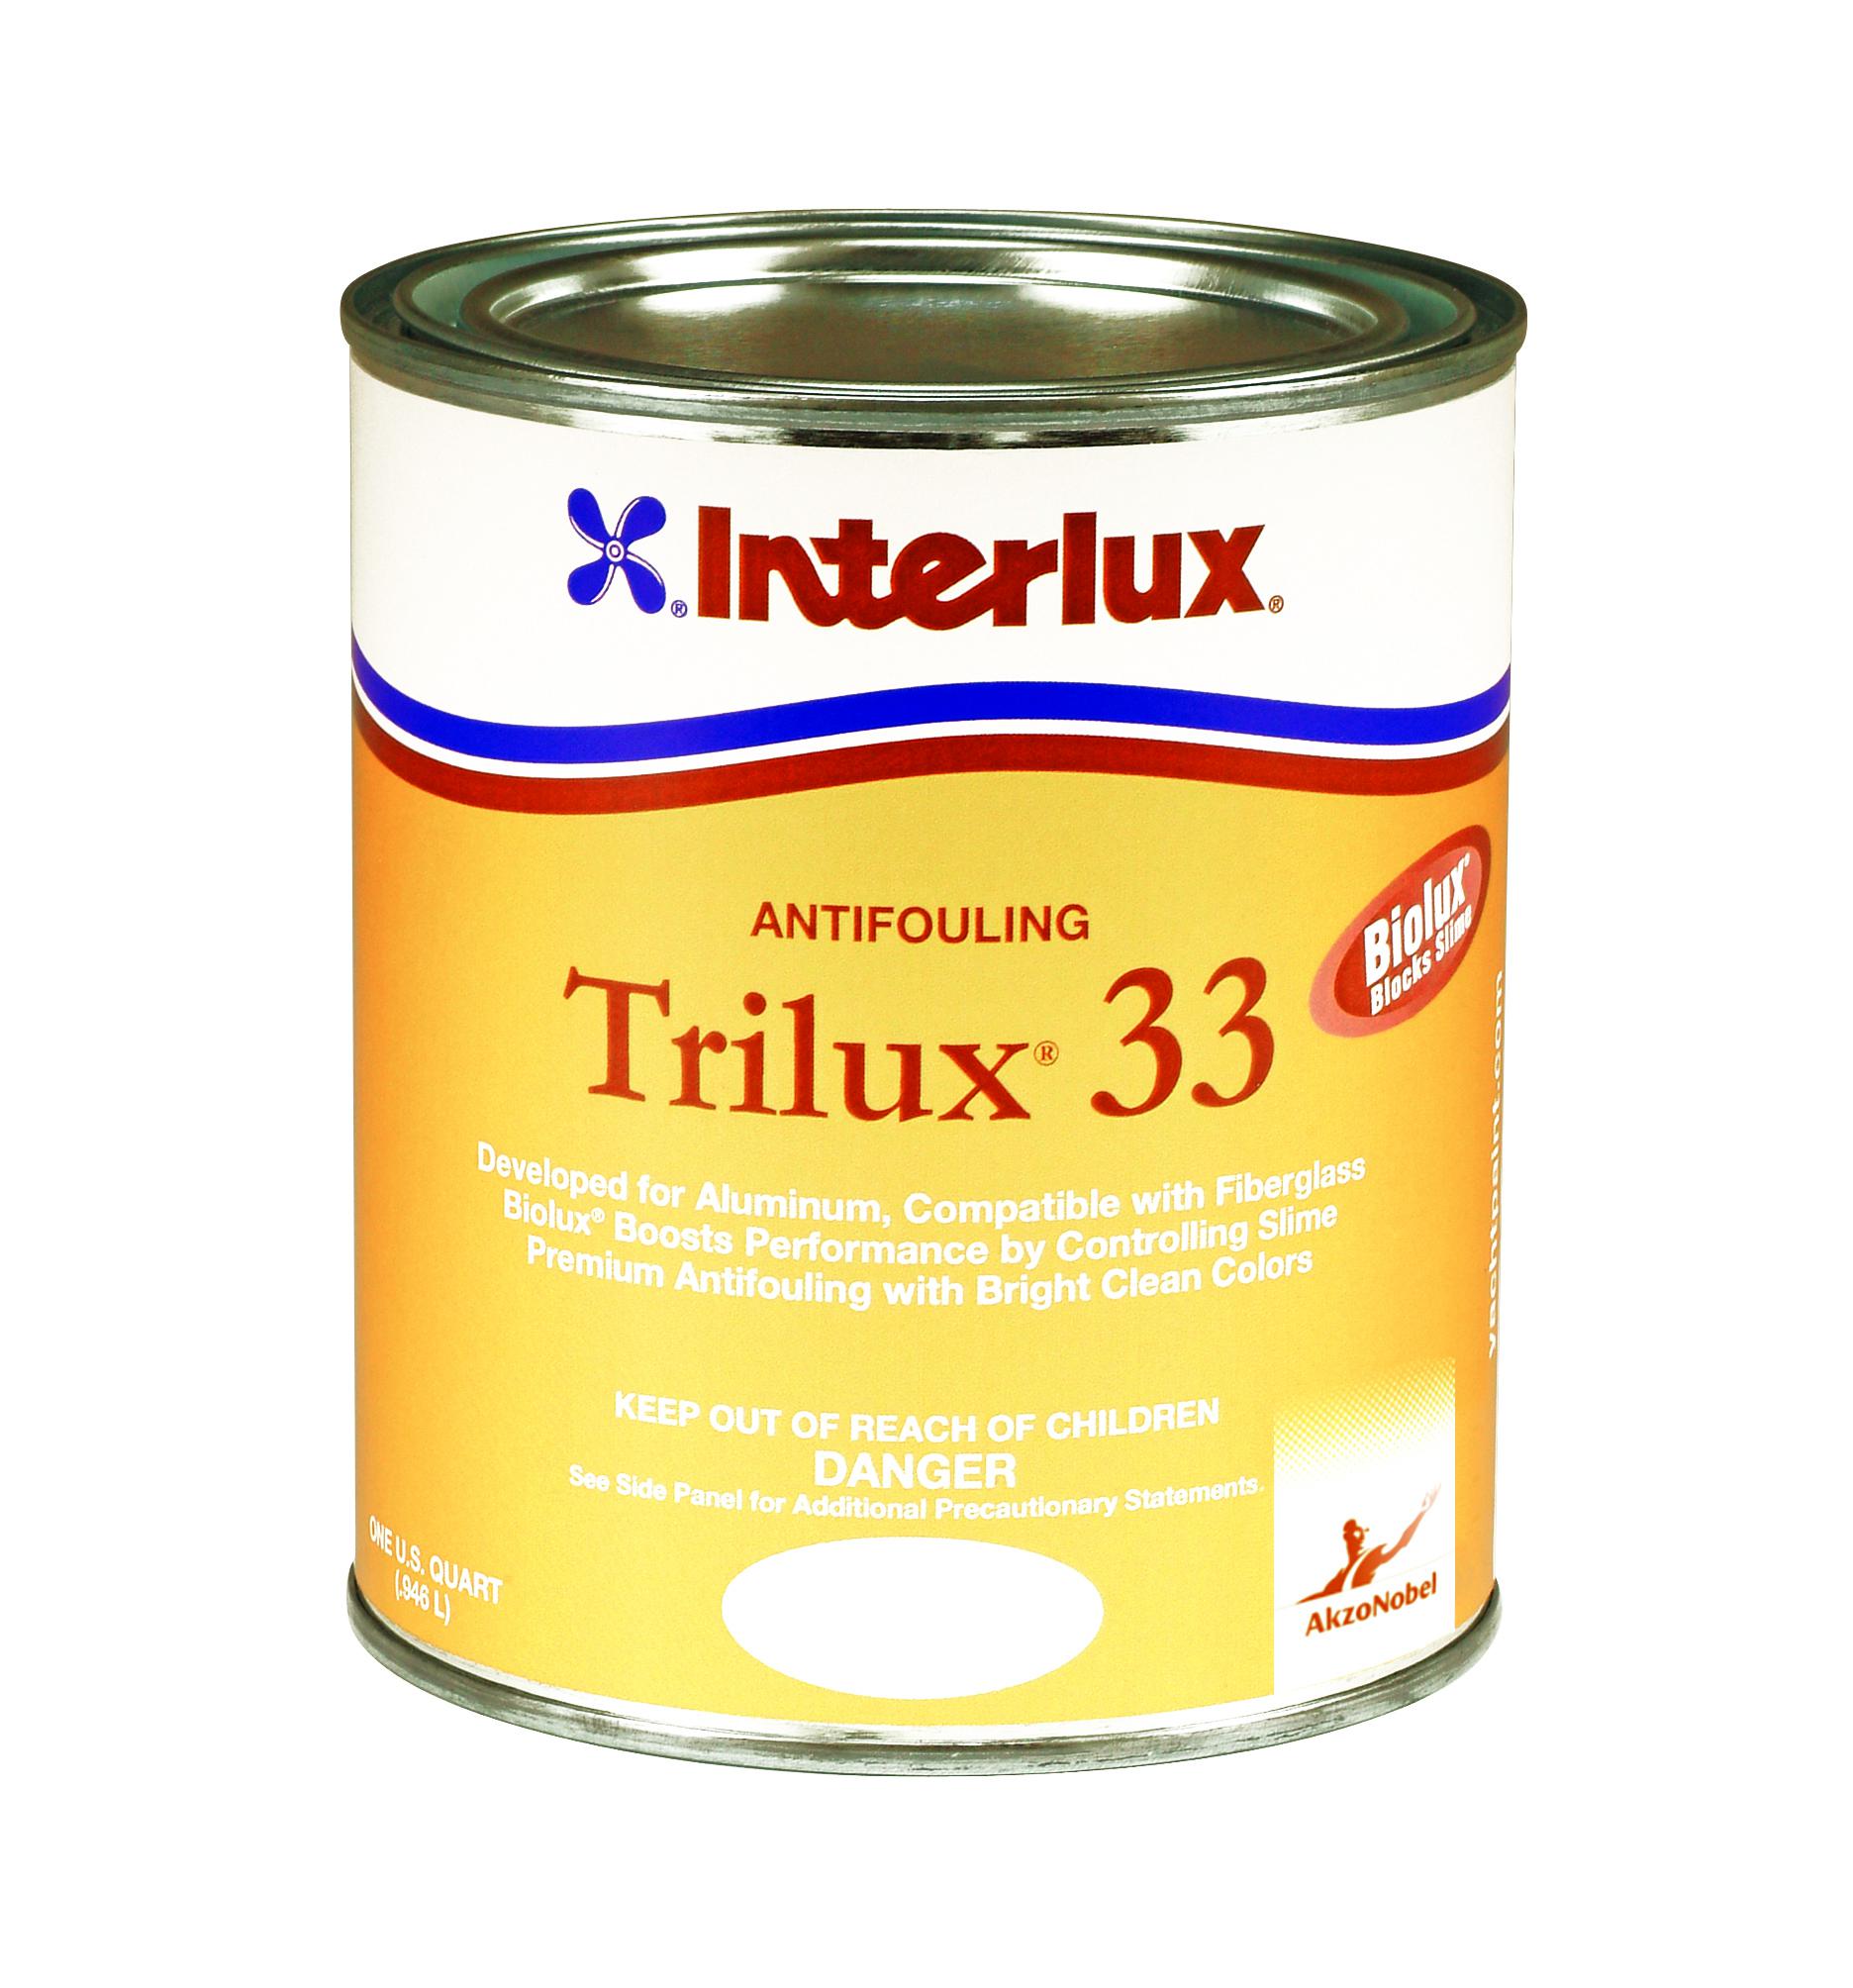 Interlux trilux 33 boat anti-fouling paint blue quart